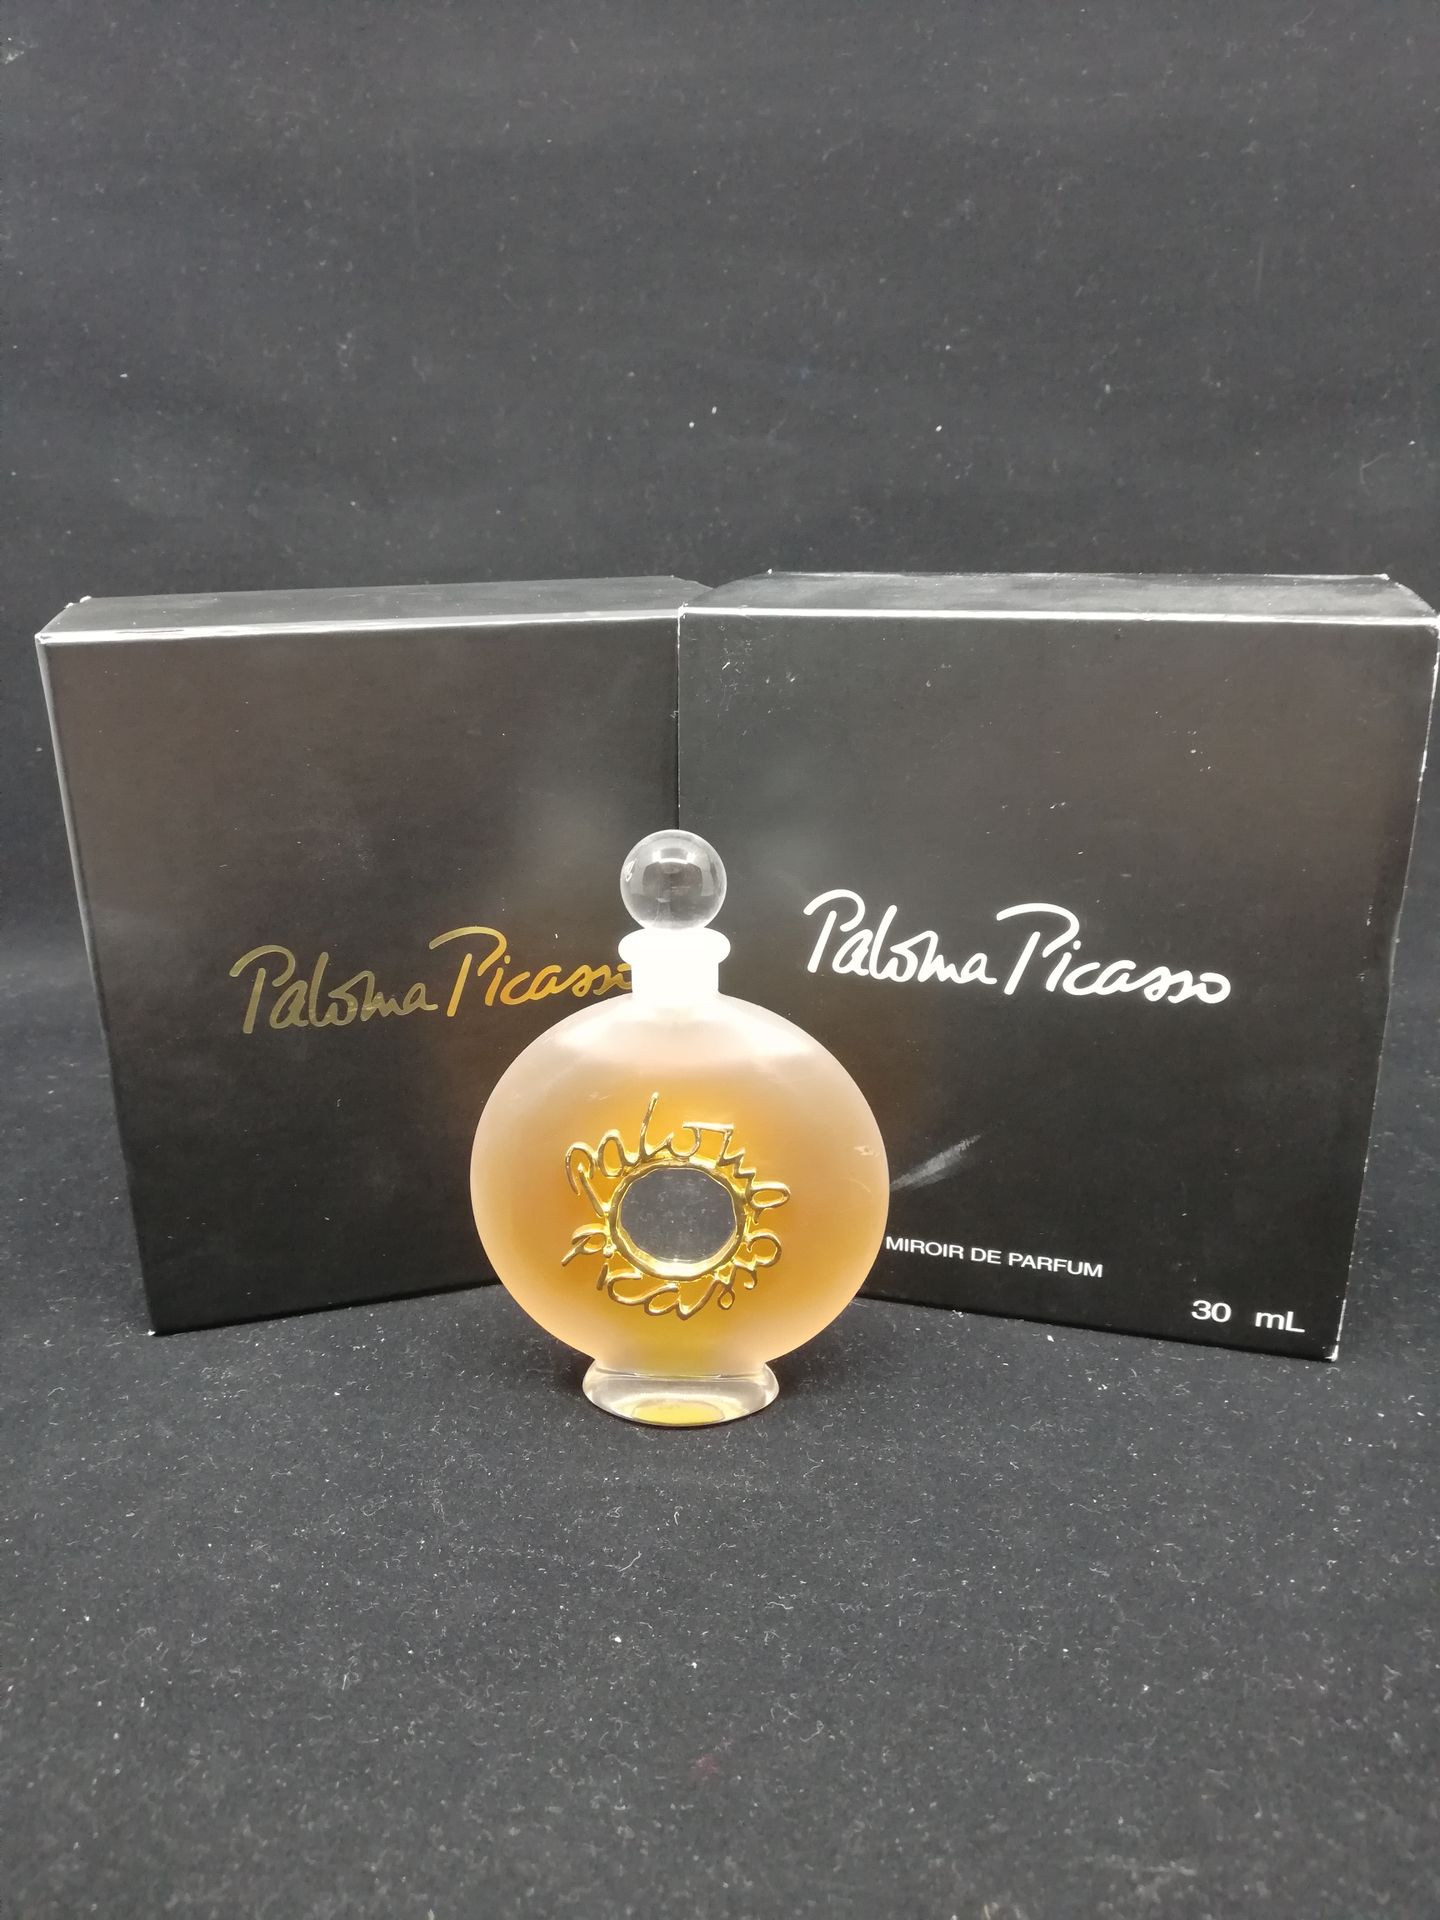 Null Paloma Picasso - (años 90)

Frasco de la edición "Miroir de Parfum" numerad&hellip;